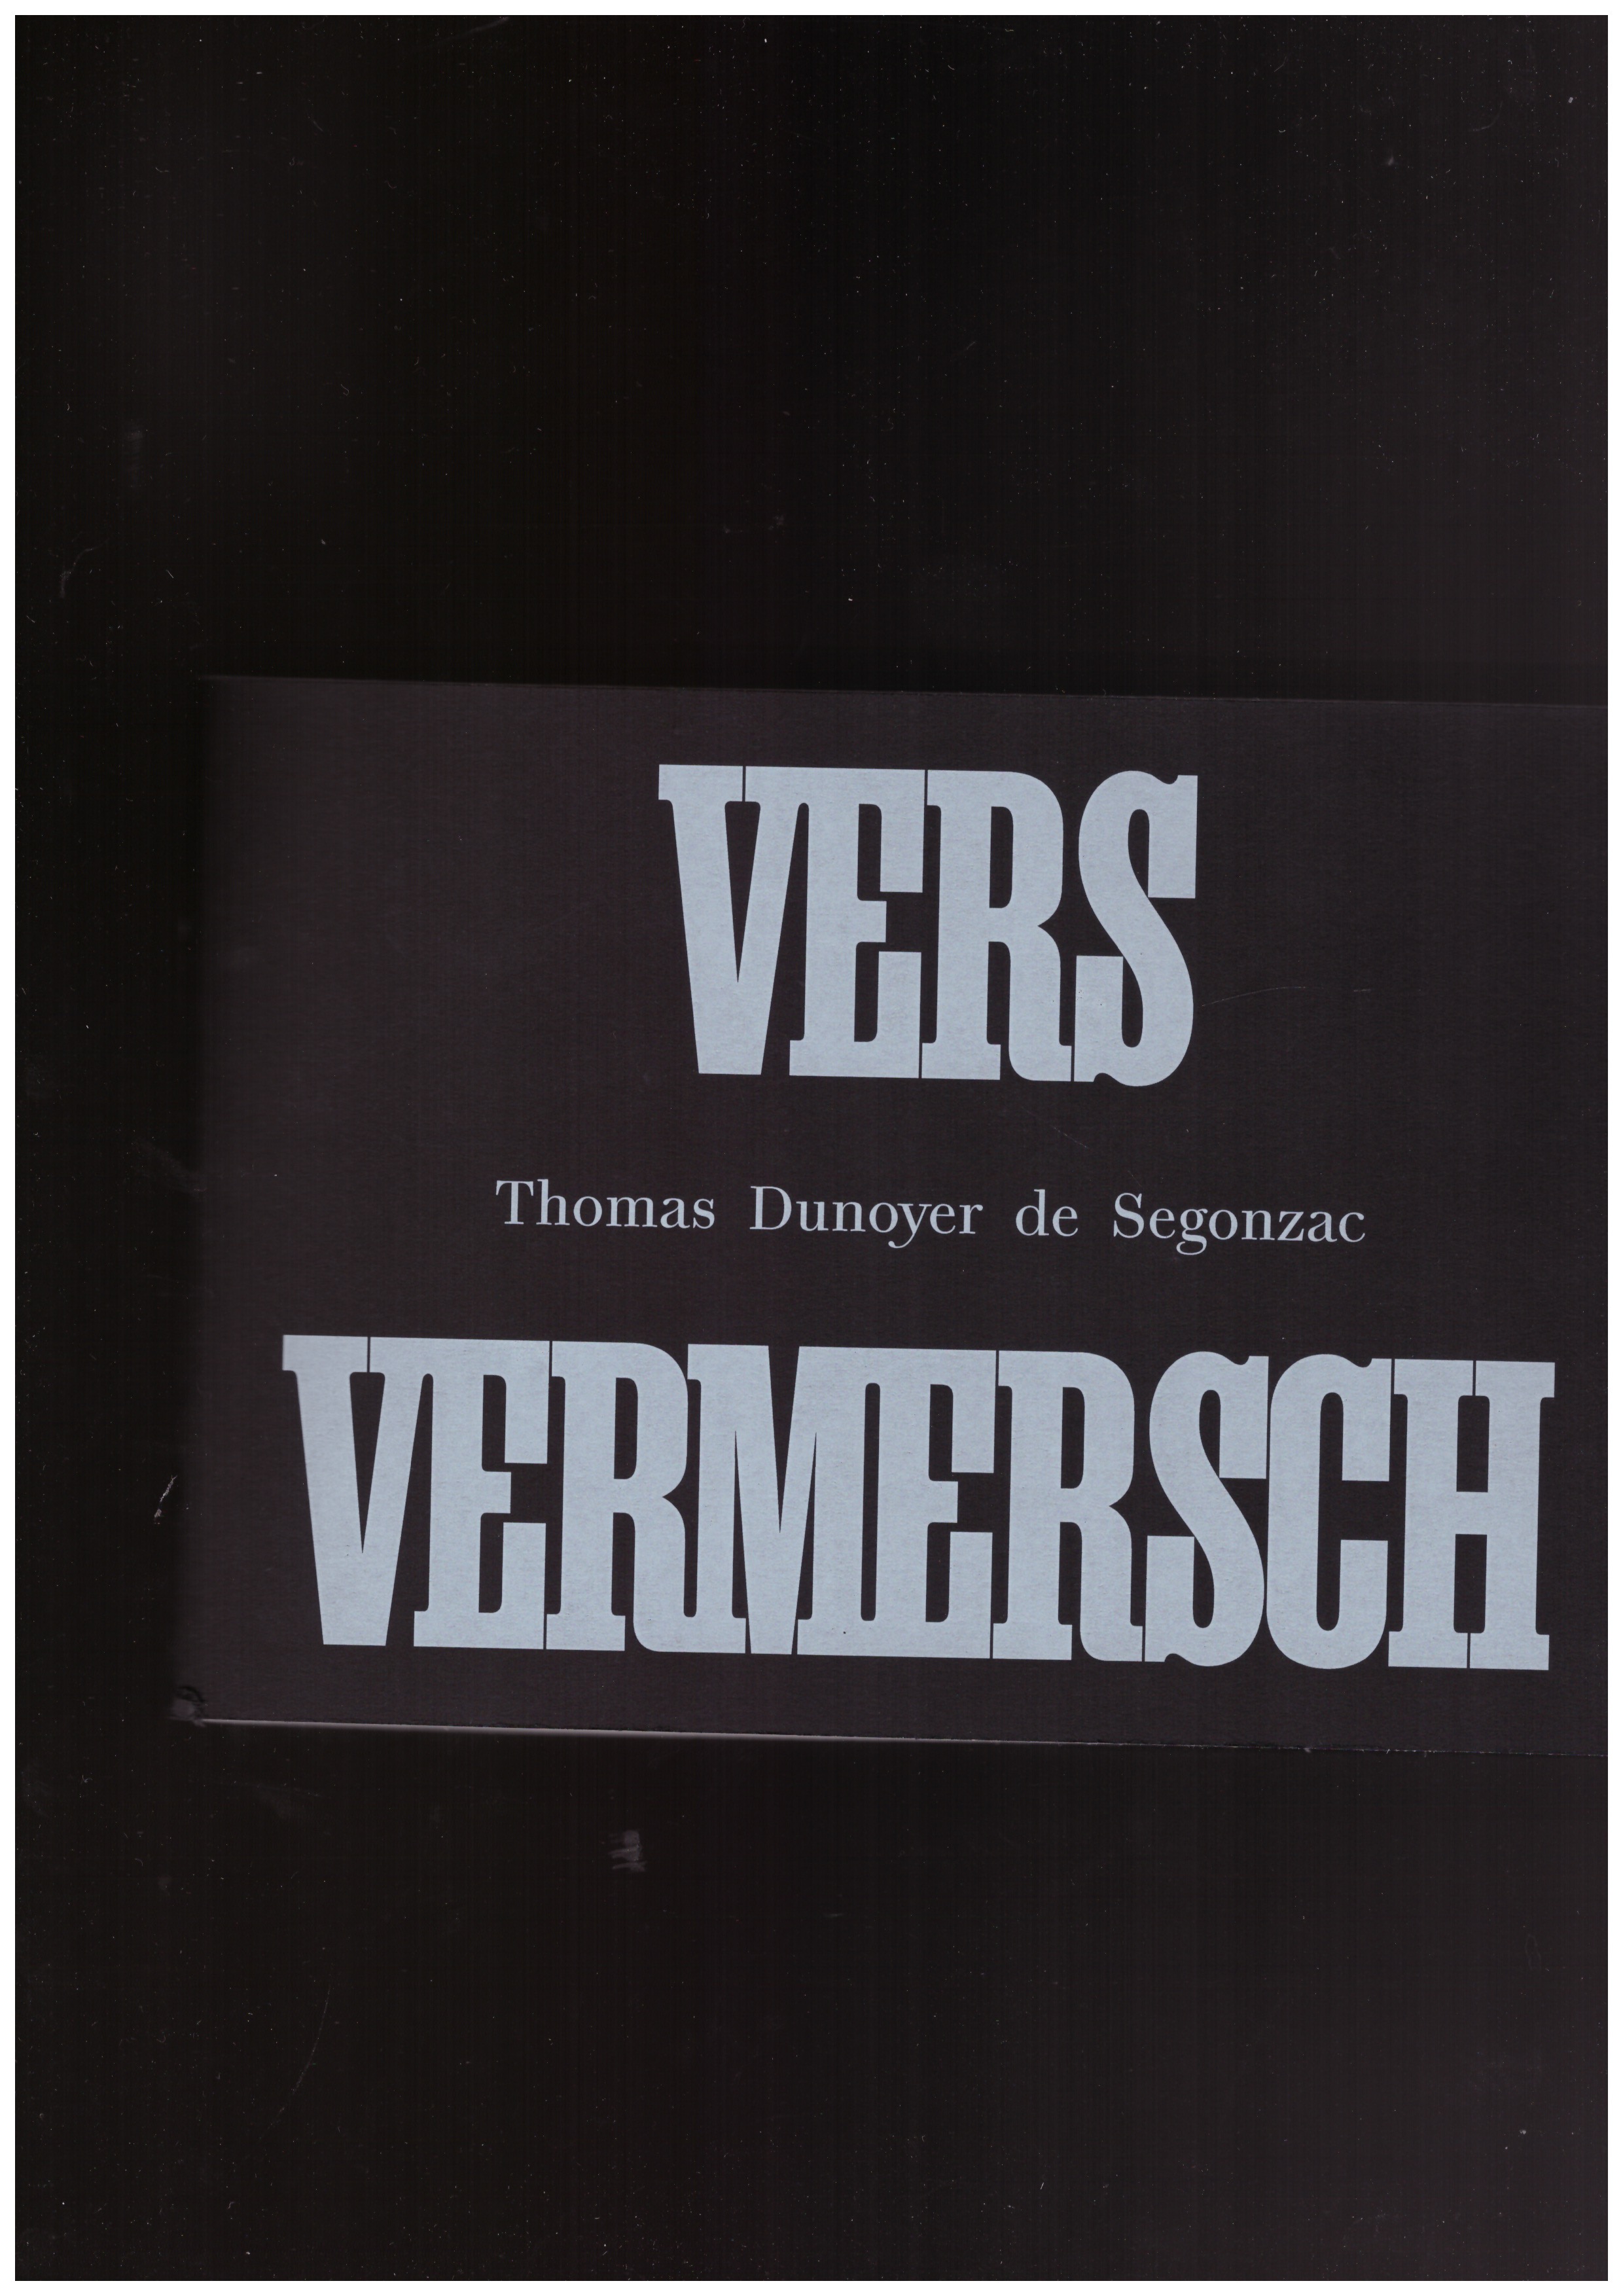 DUNOYER DE SEGONZAC, Thomas - Vers Vermersch